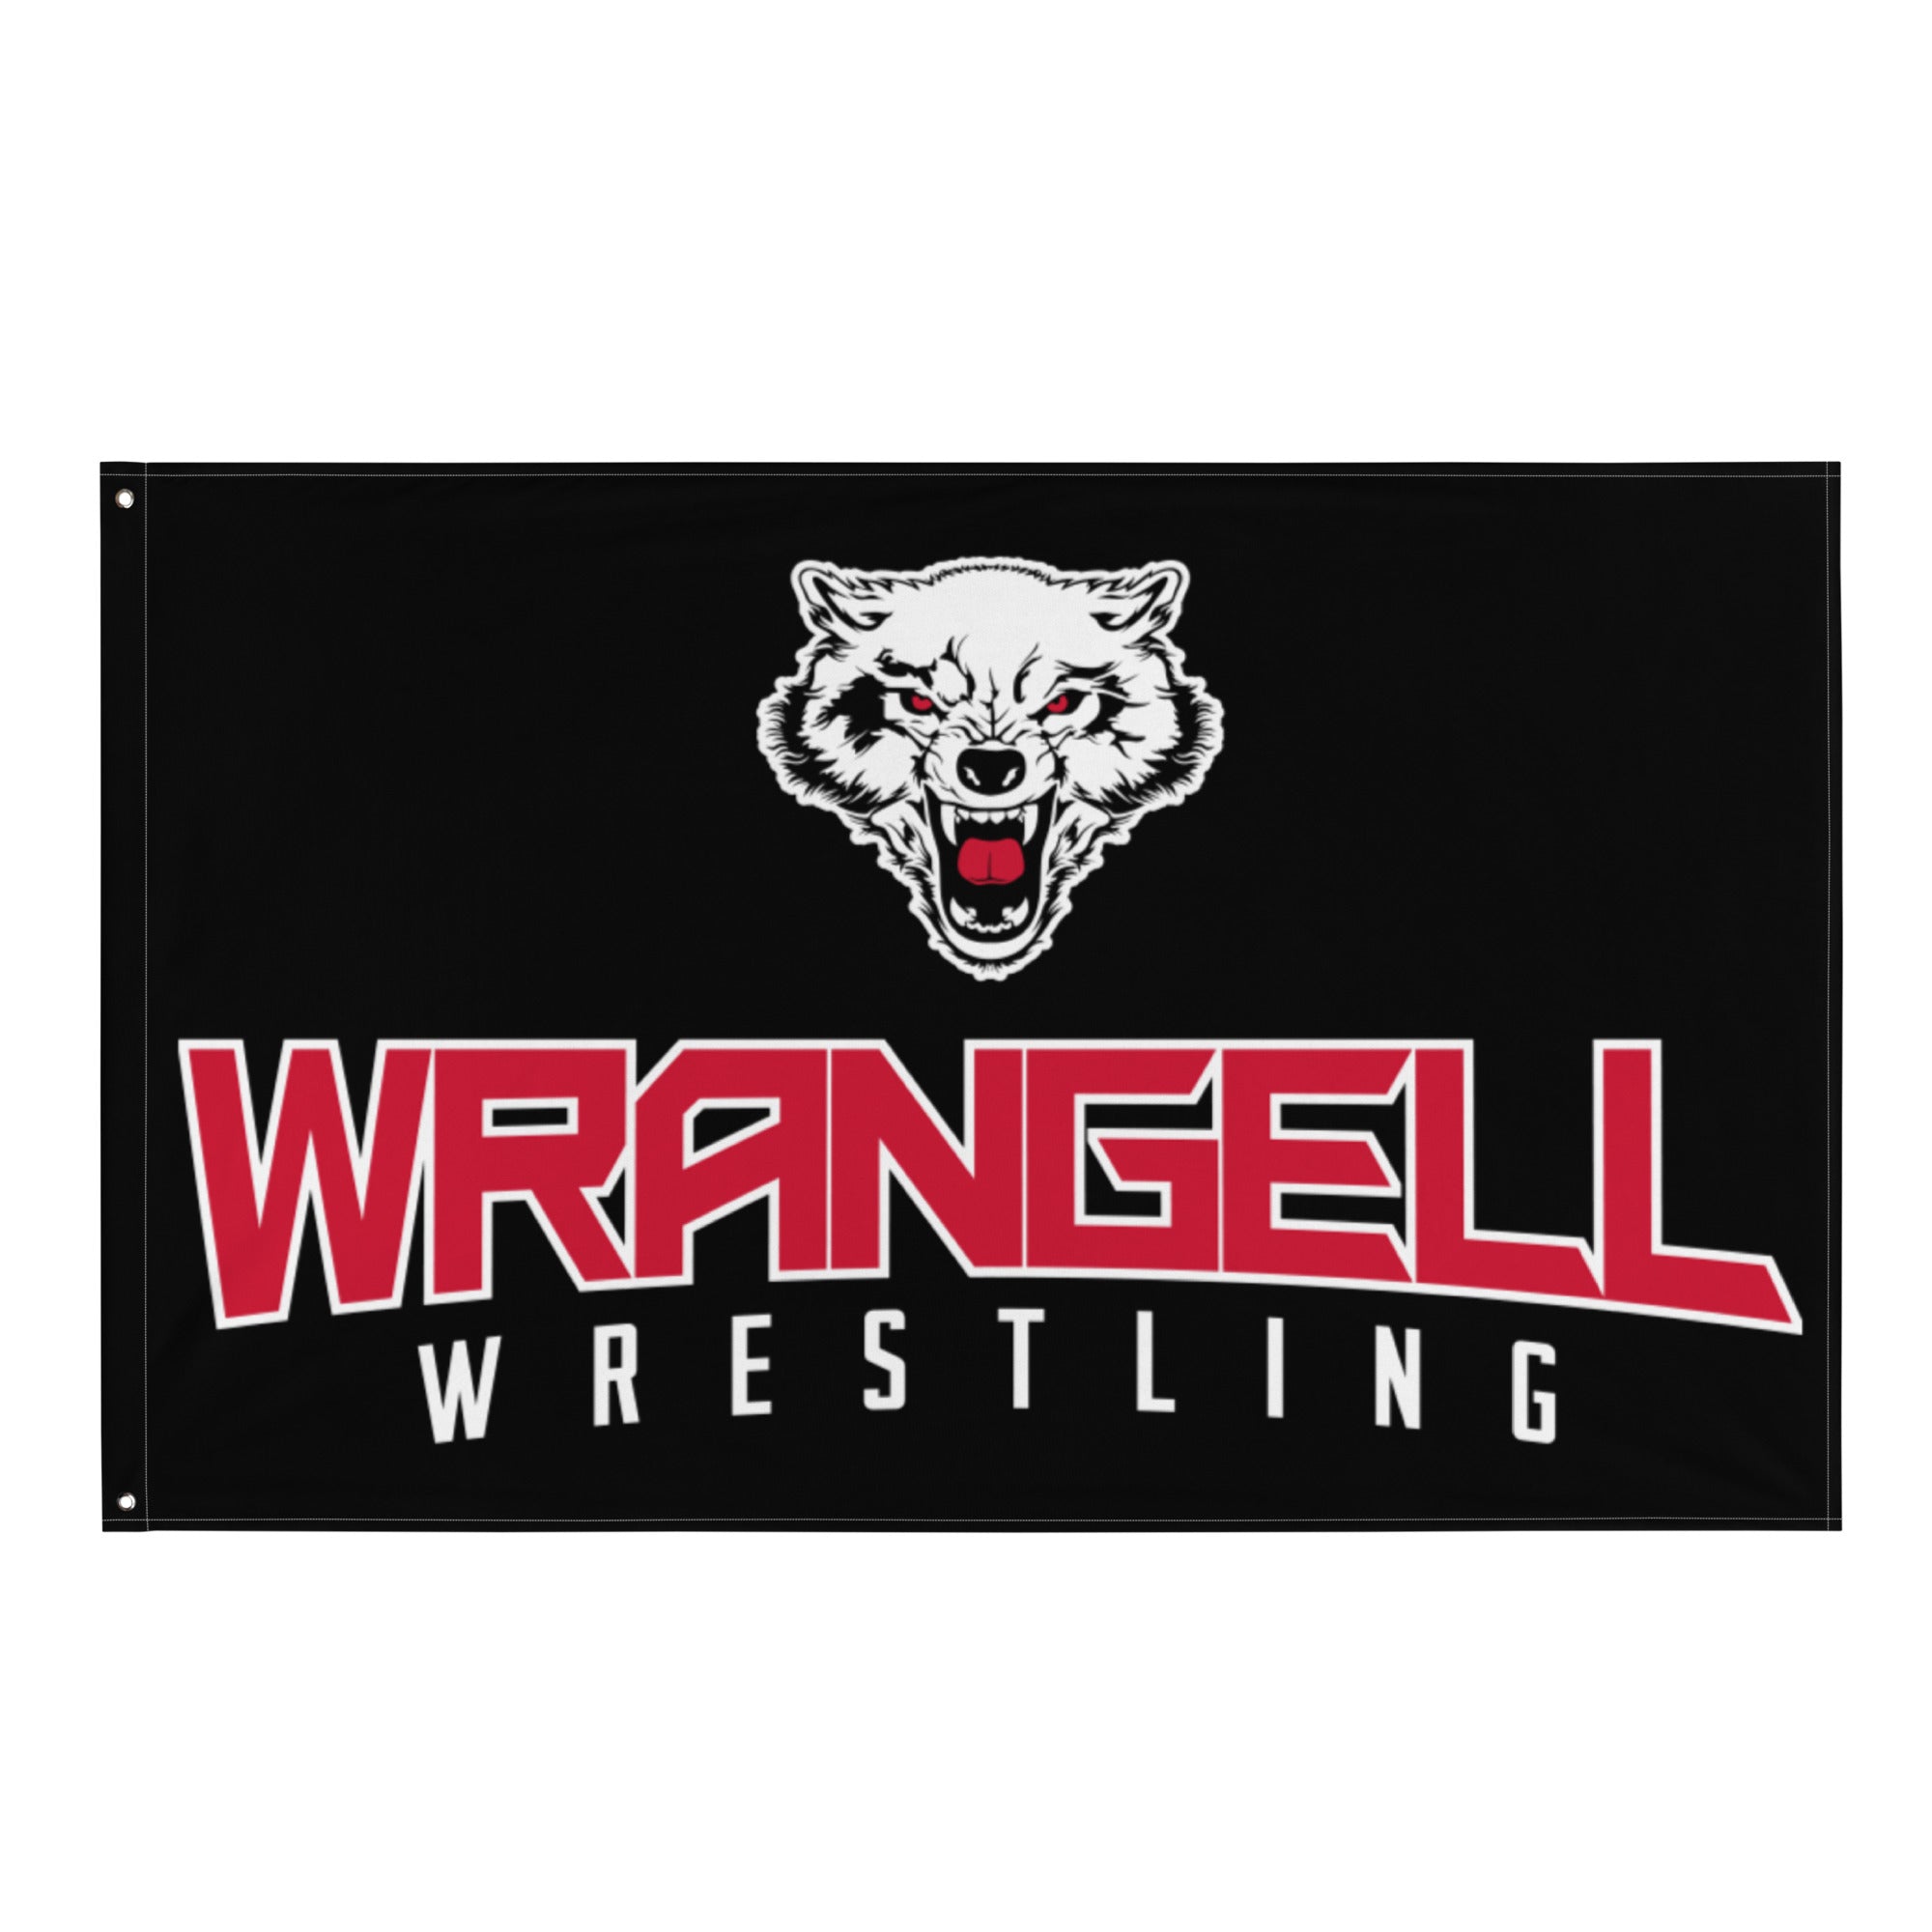 Wrangell Wrestling All-Over Print Flag